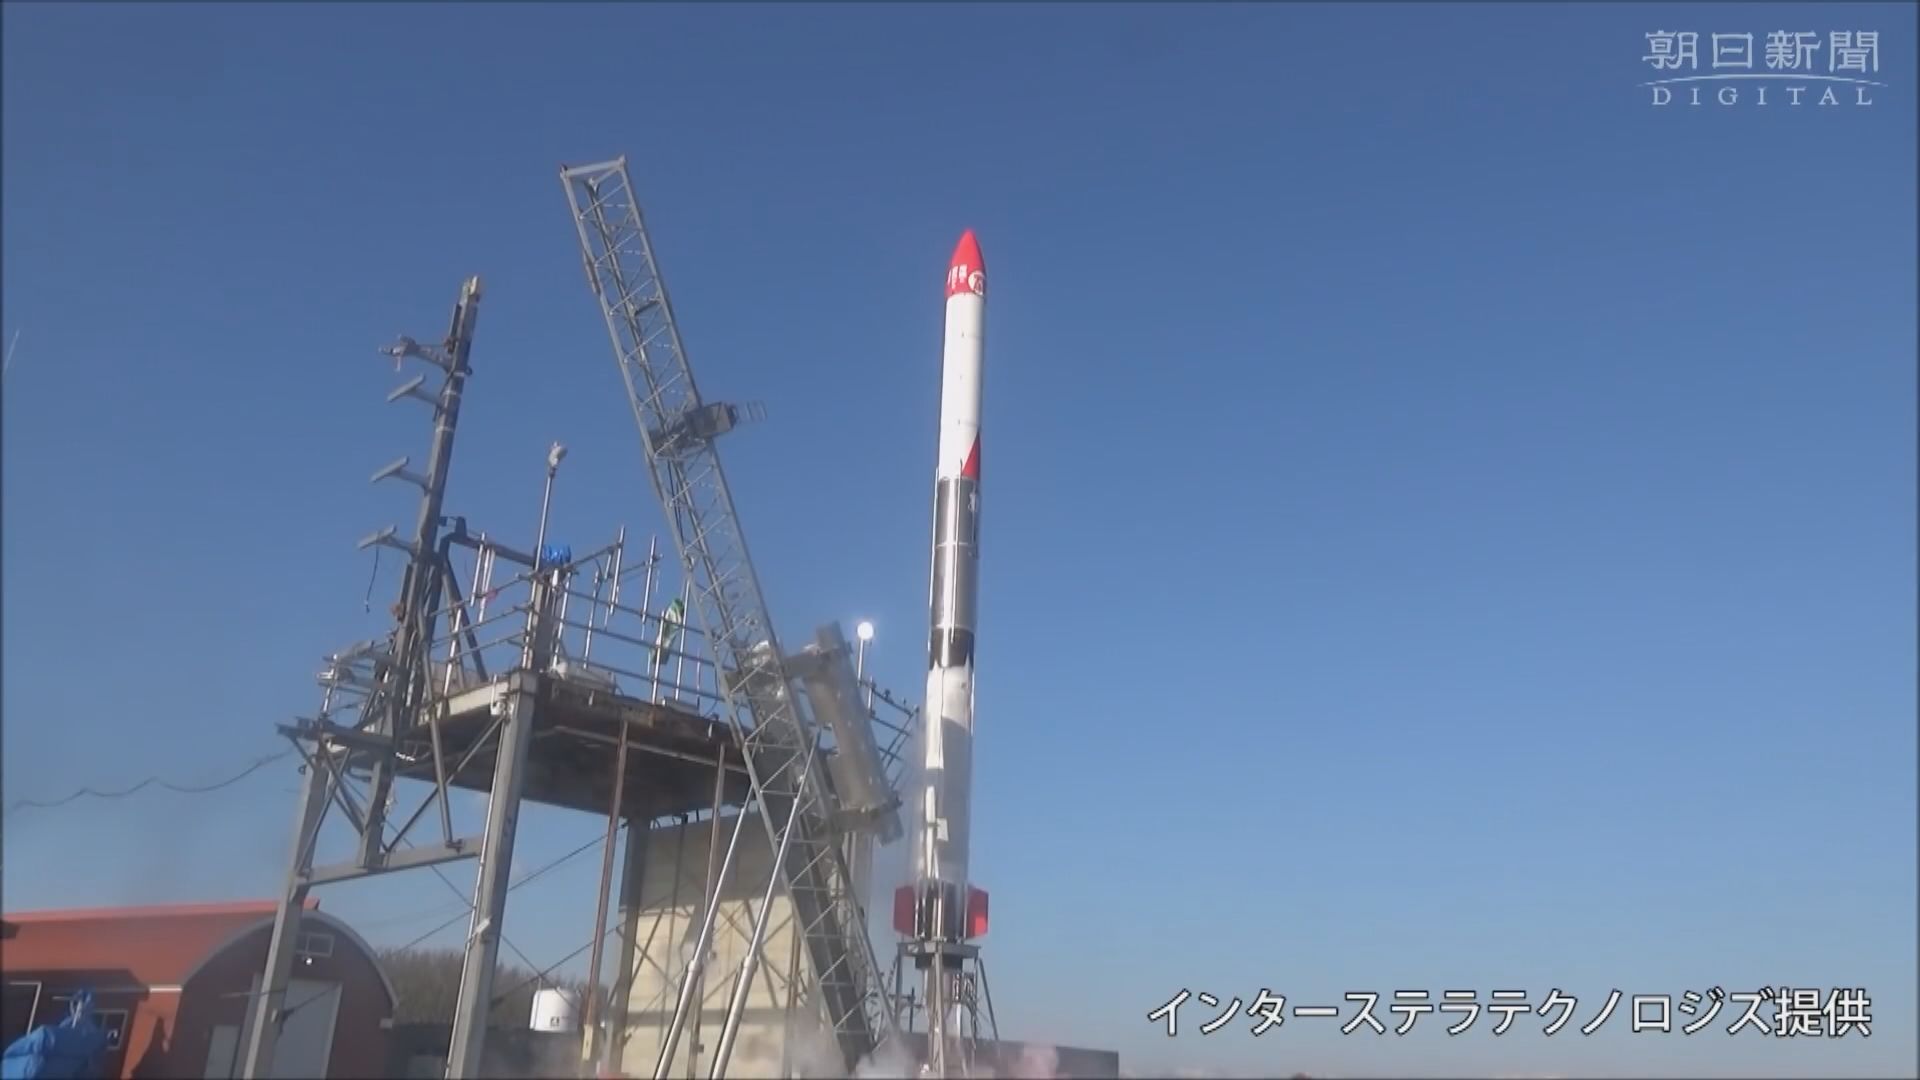 【環球薈報】日本民企科技公司成功發射迷你火箭